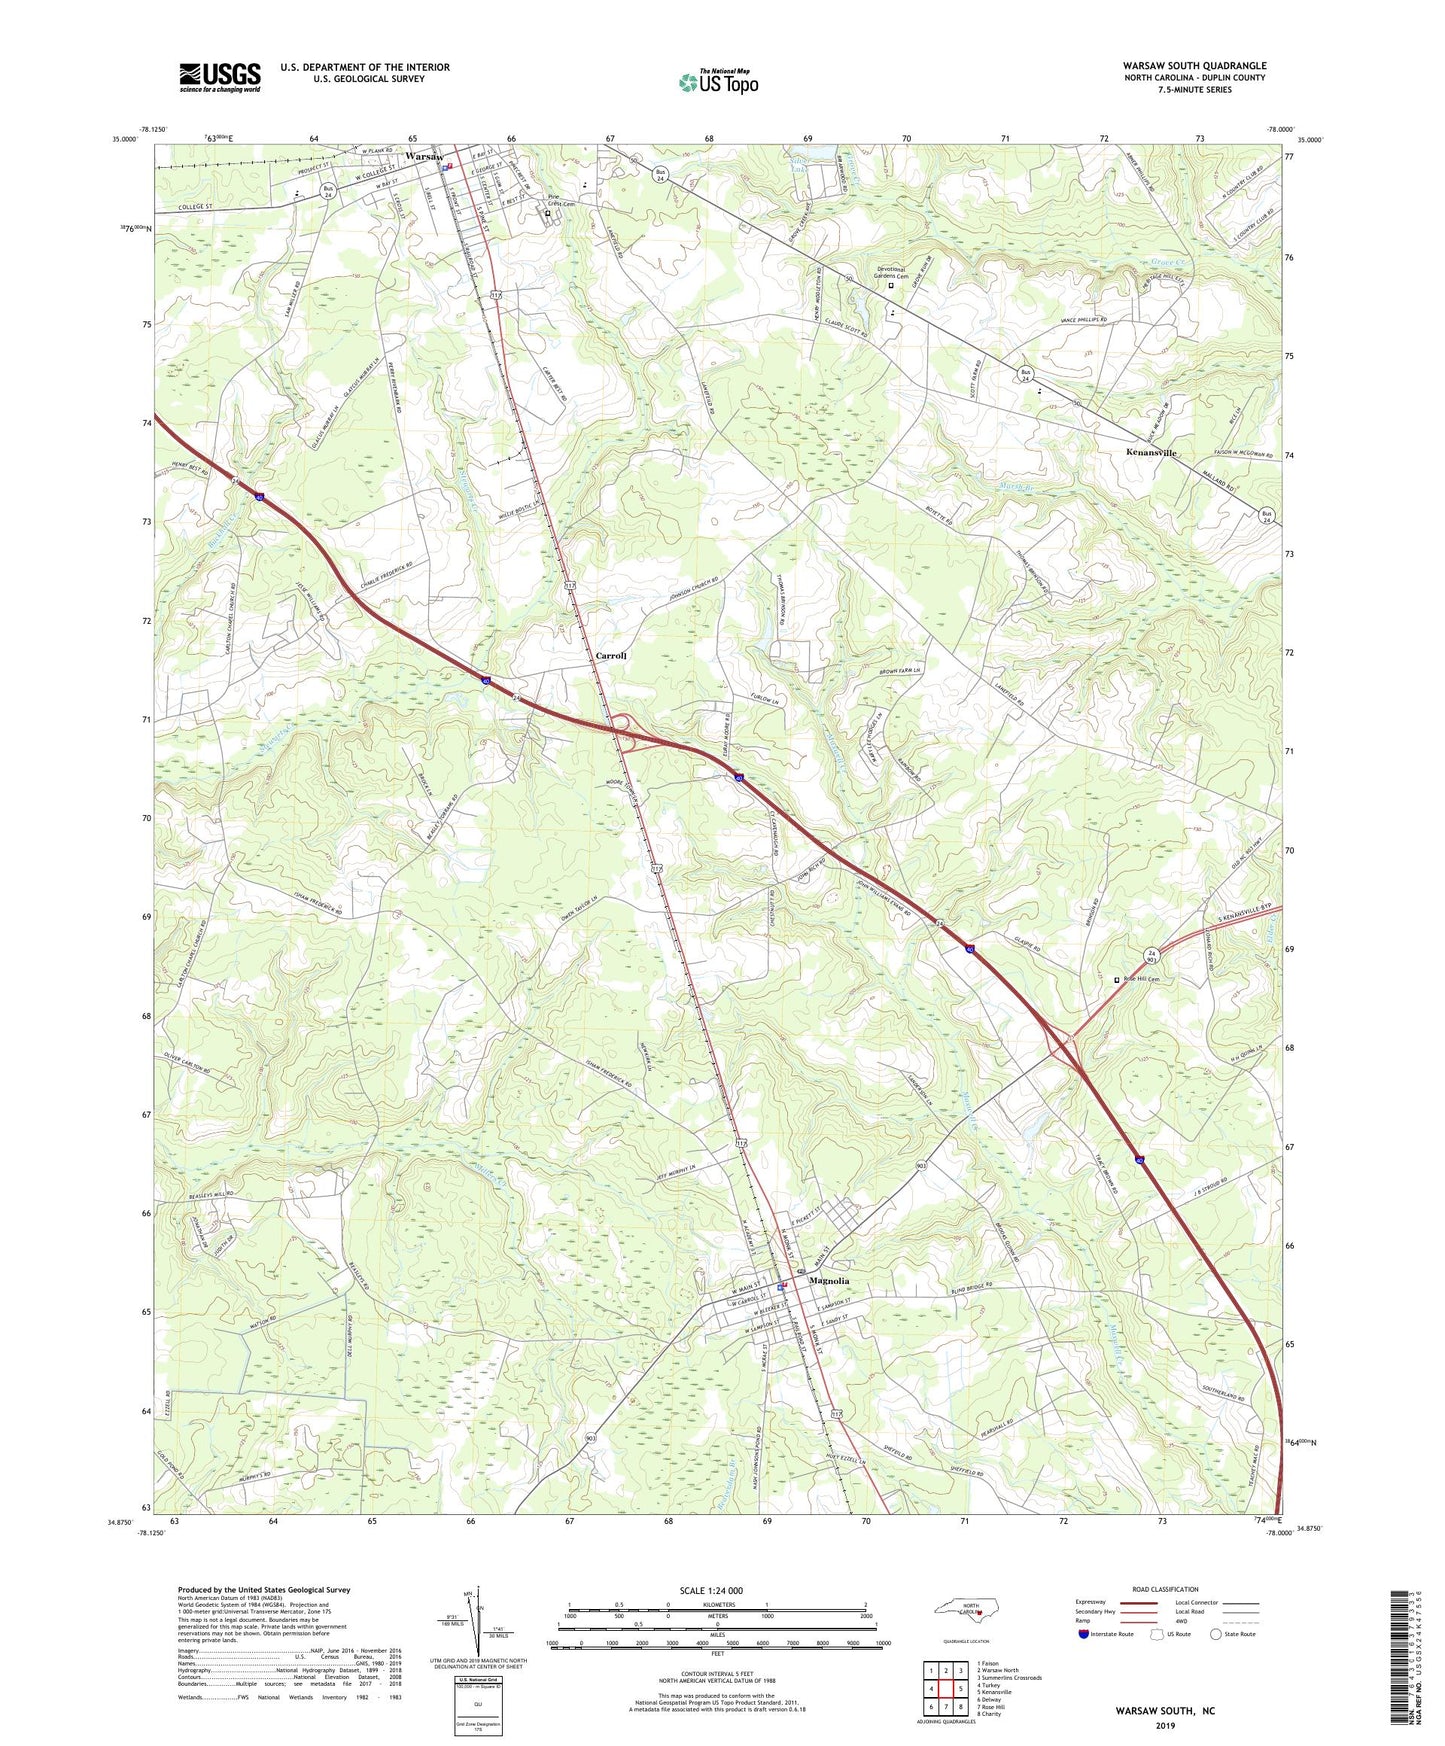 Warsaw South North Carolina US Topo Map Image